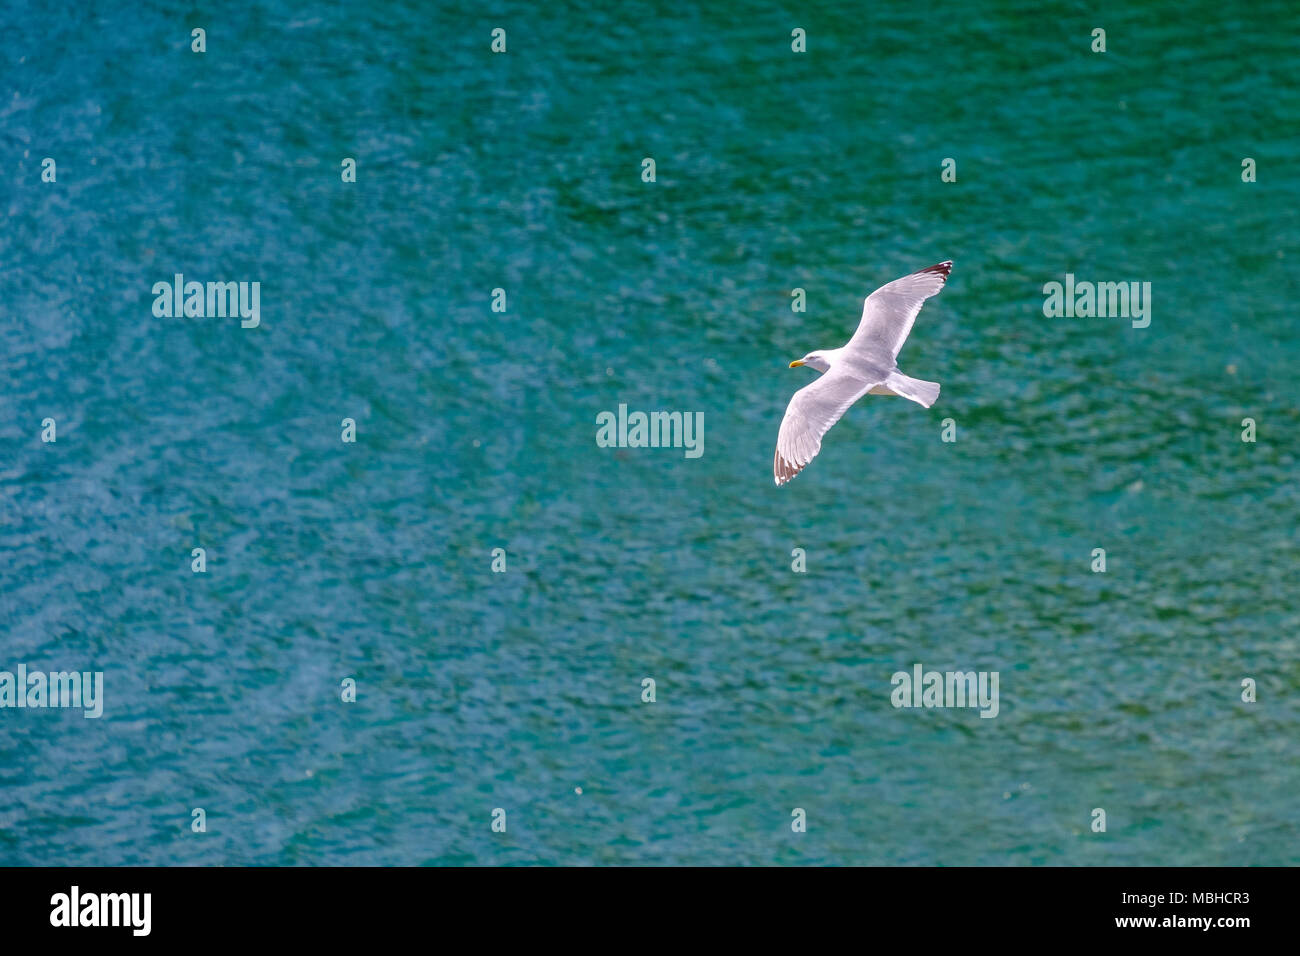 HERRING GULL FLYING OVER SEA Stock Photo